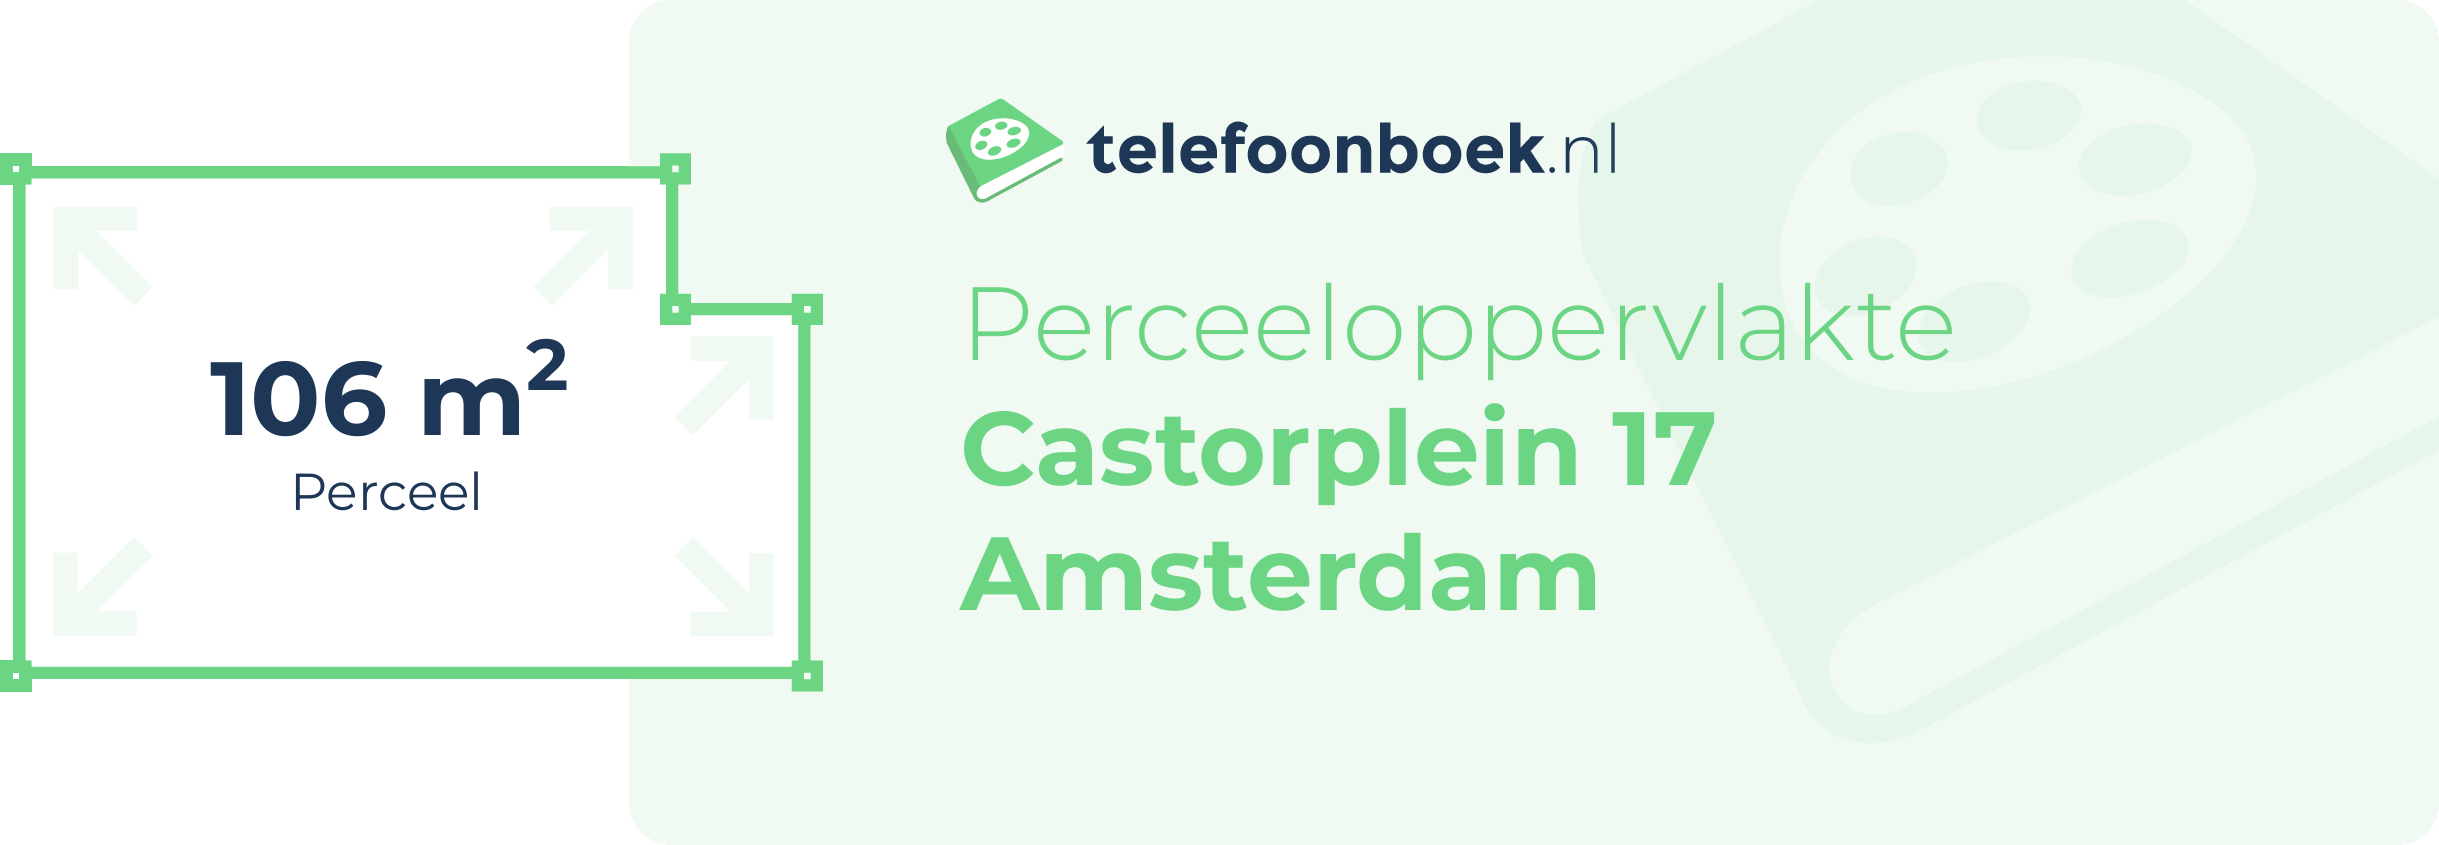 Perceeloppervlakte Castorplein 17 Amsterdam